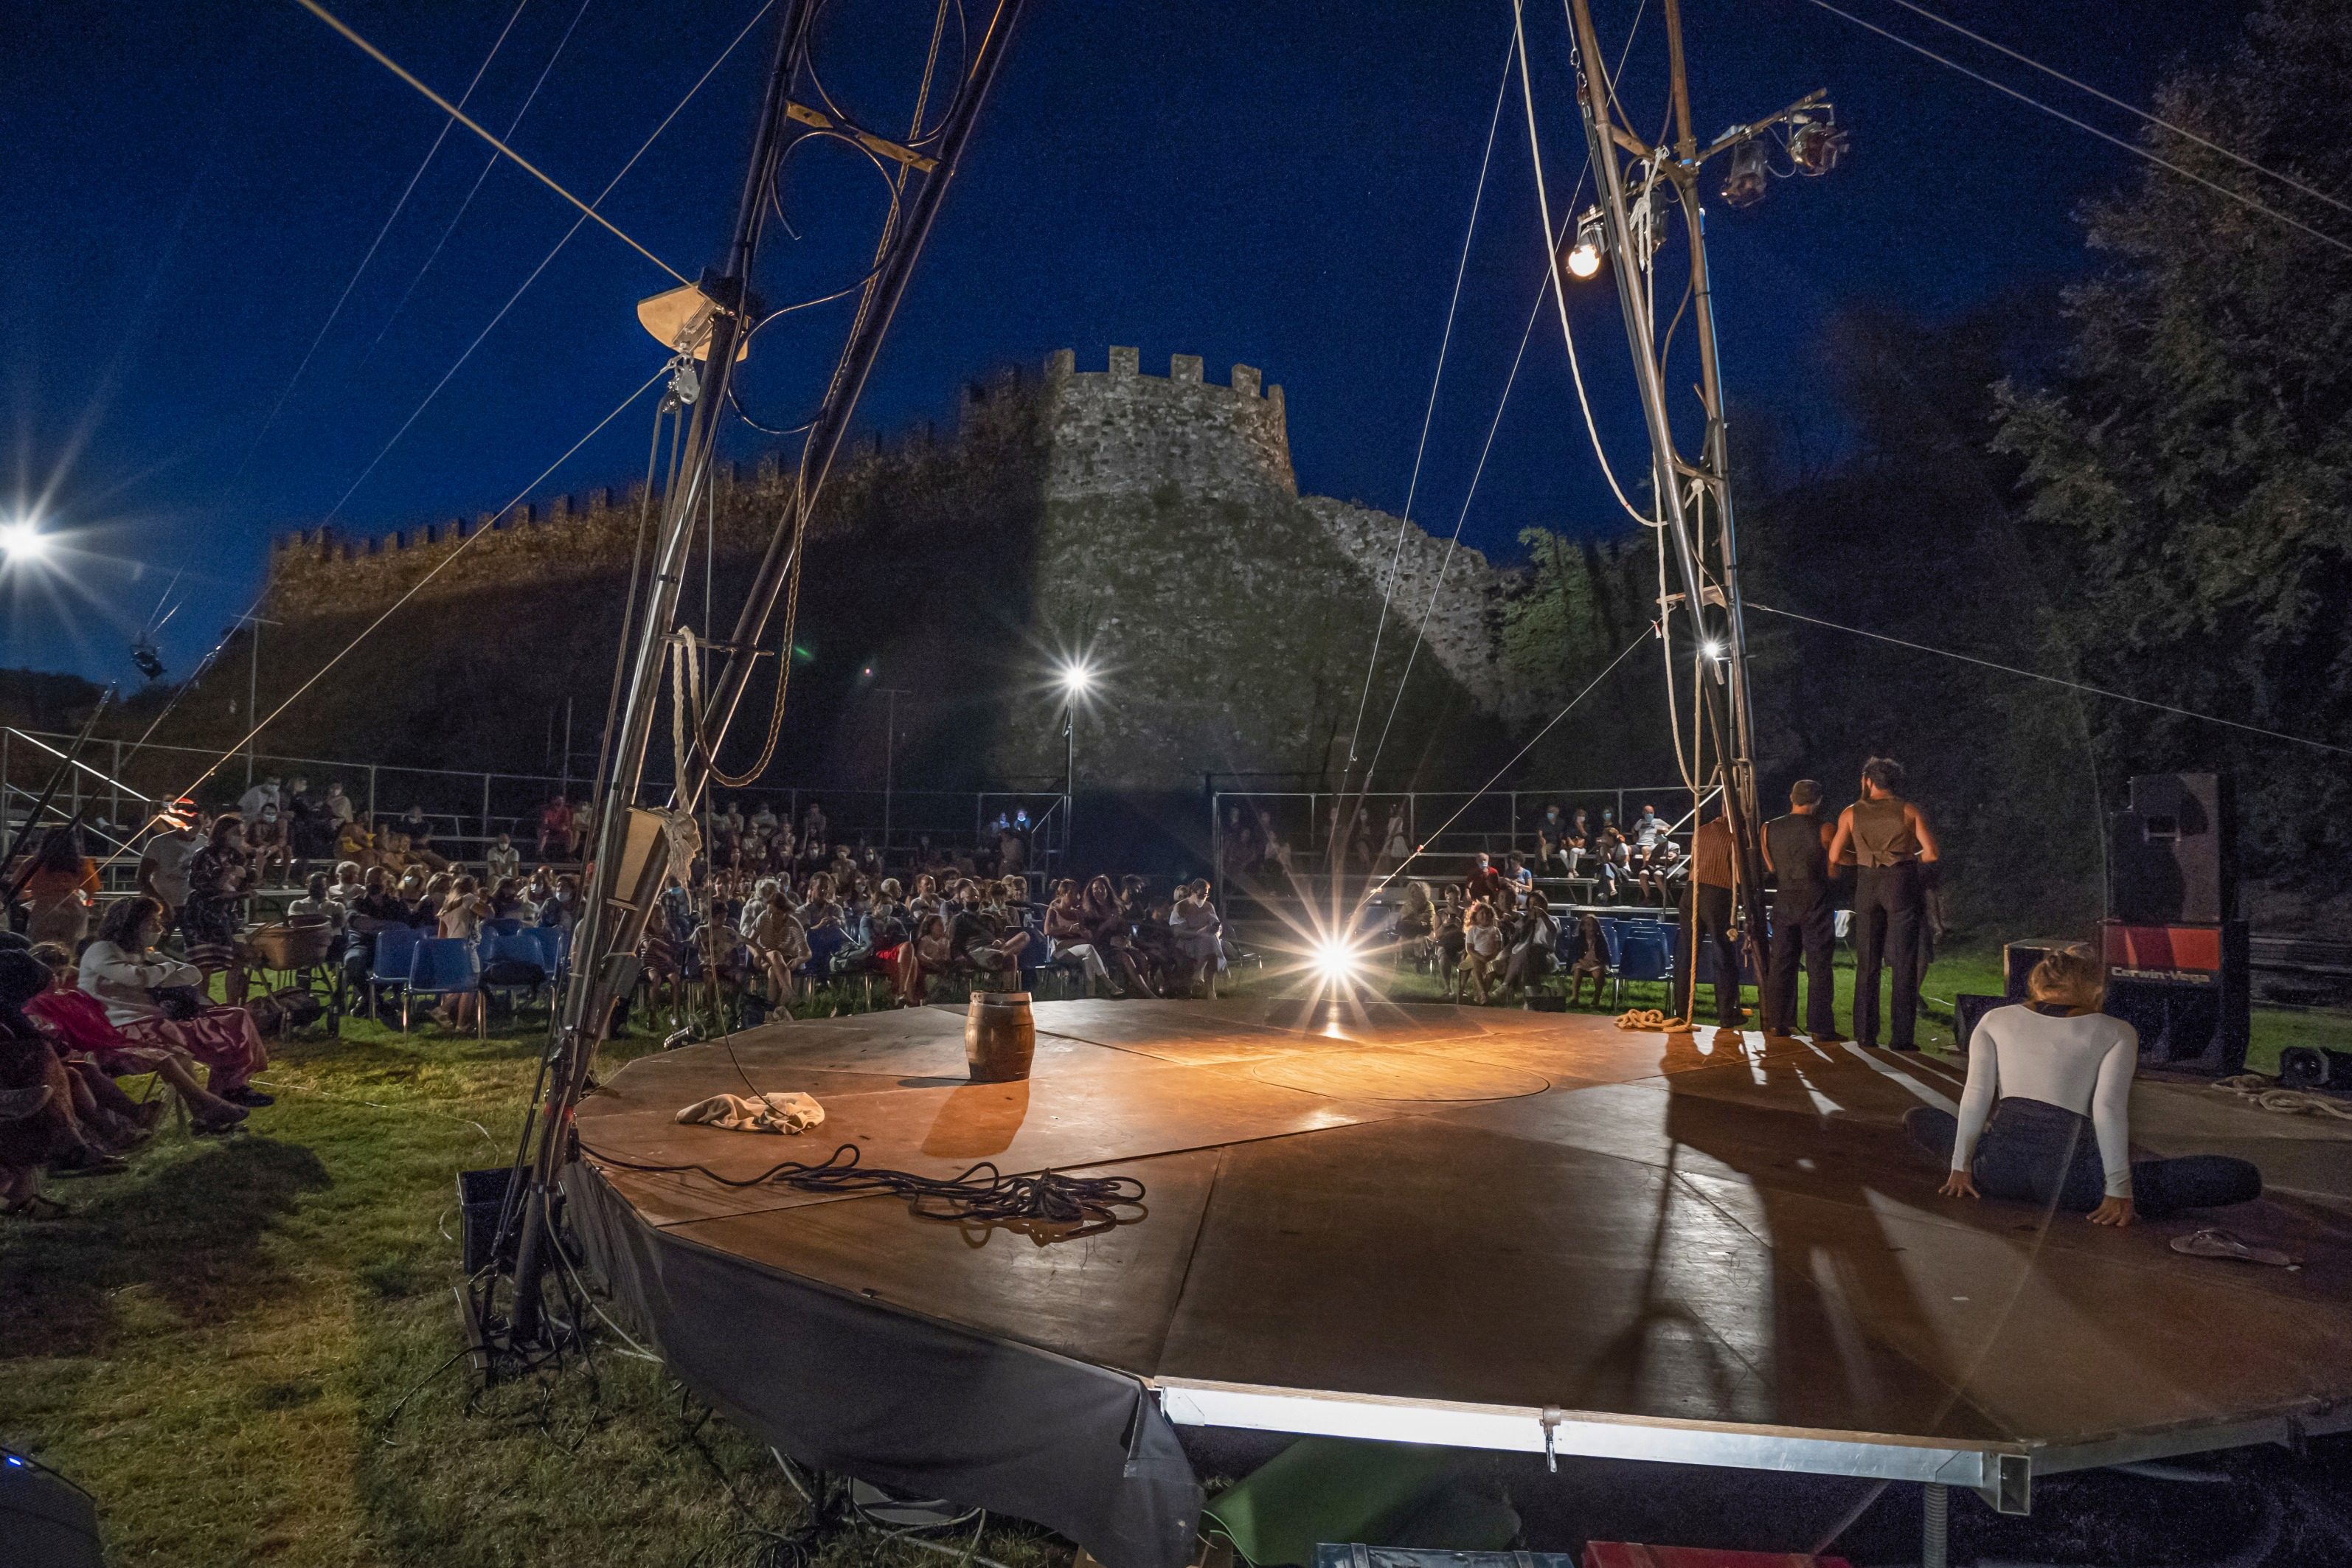 Dal 16 luglio al 7 agosto 2021 a Lonato del Garda (BS) – Il grande Circo contemporaneo a Lonato in FESTIVAL